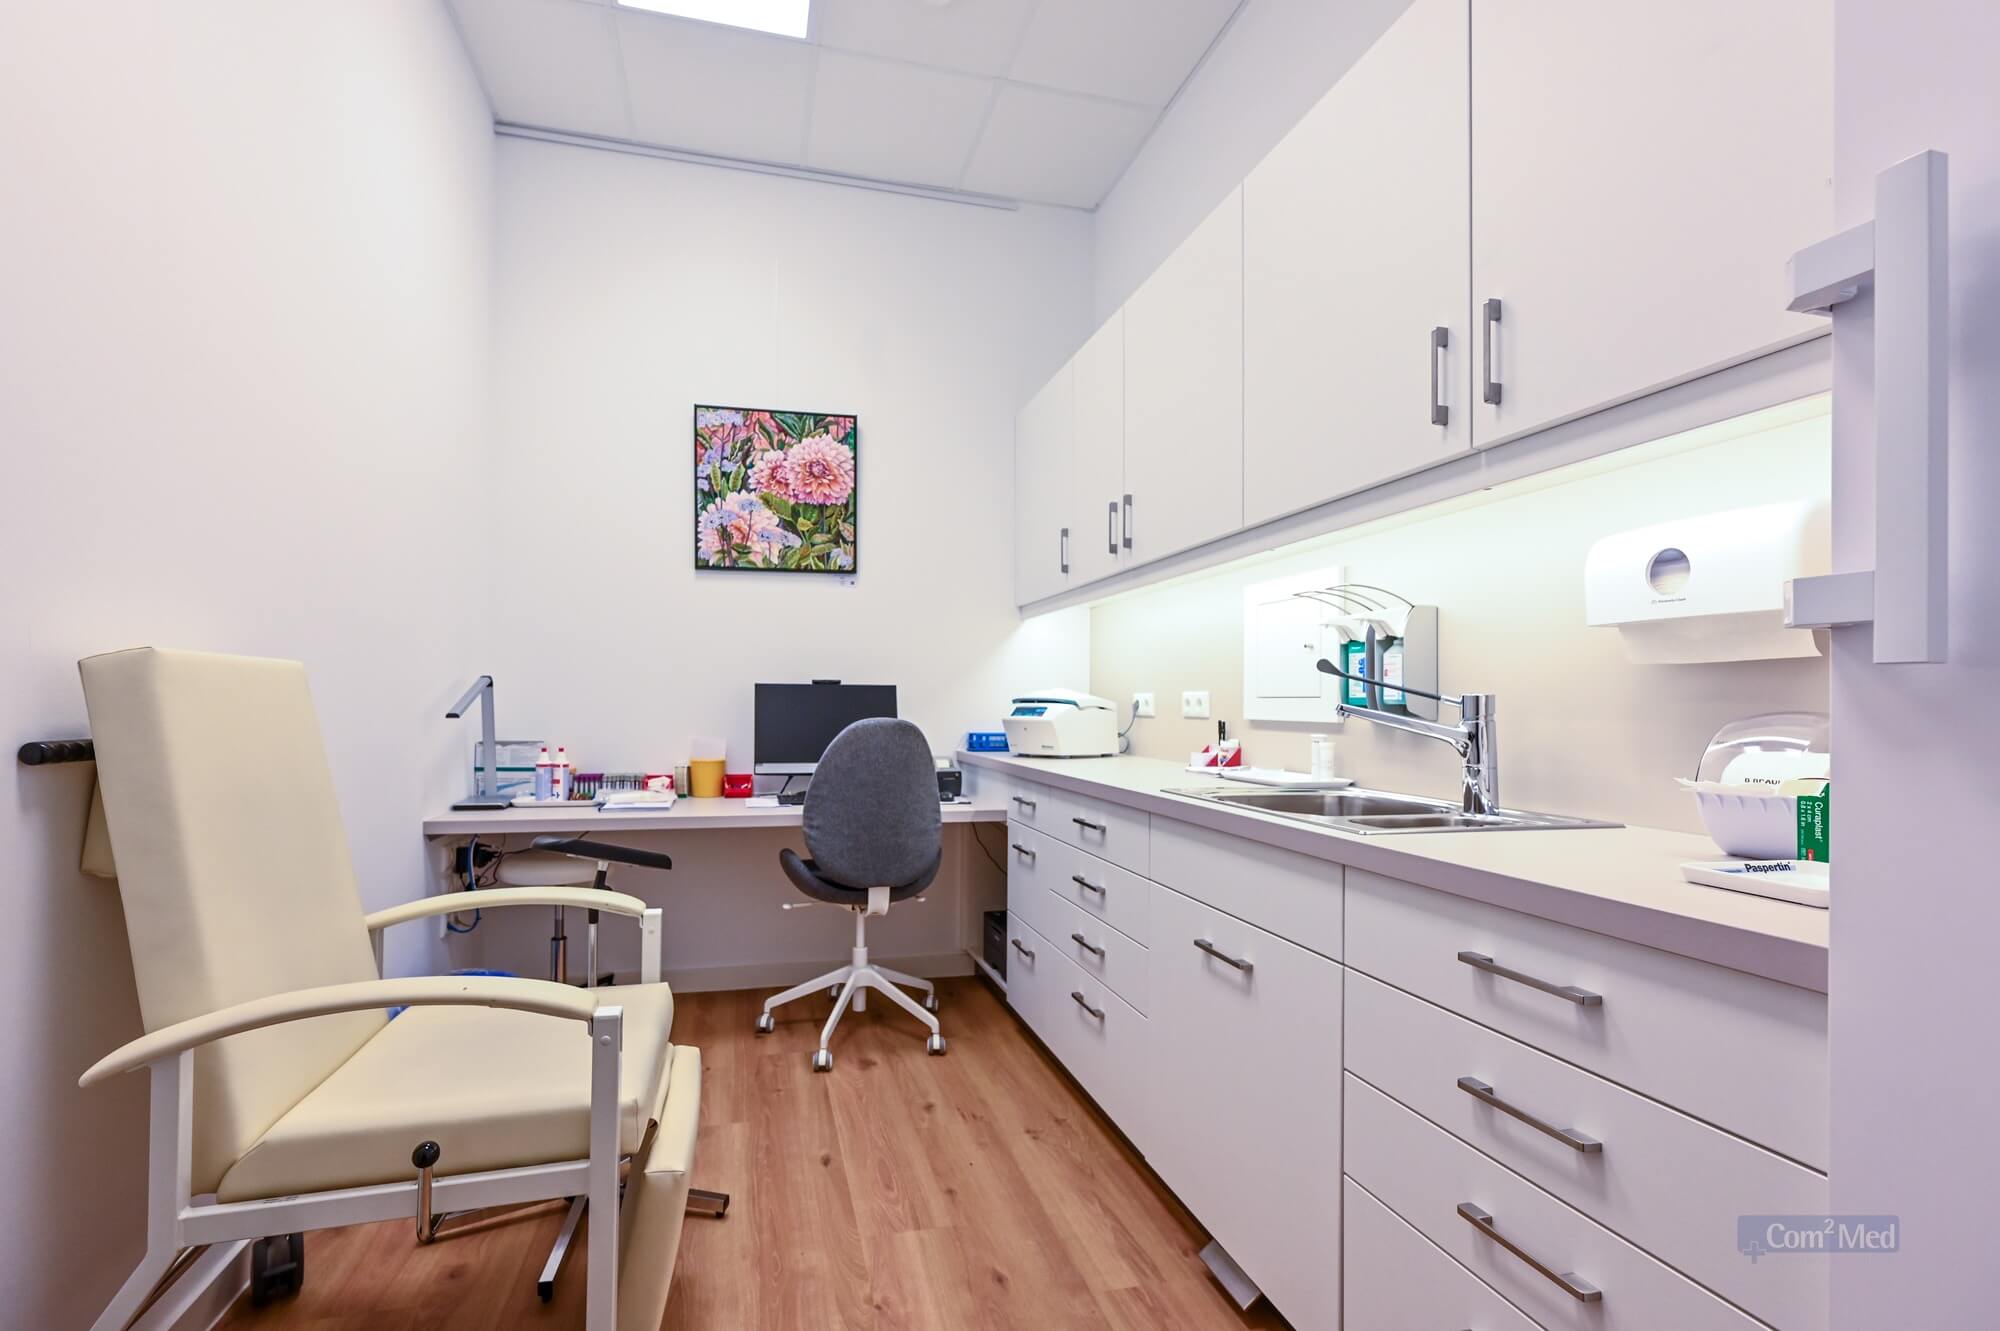 Behandlungsraum mit cremefarbenem Untersuchungsstuhl, Schreibtisch mit Computer und medizinischem Equipment, weißer Einbauschrank mit Spüle und aufgehängtem Blumenbild an der Wand.